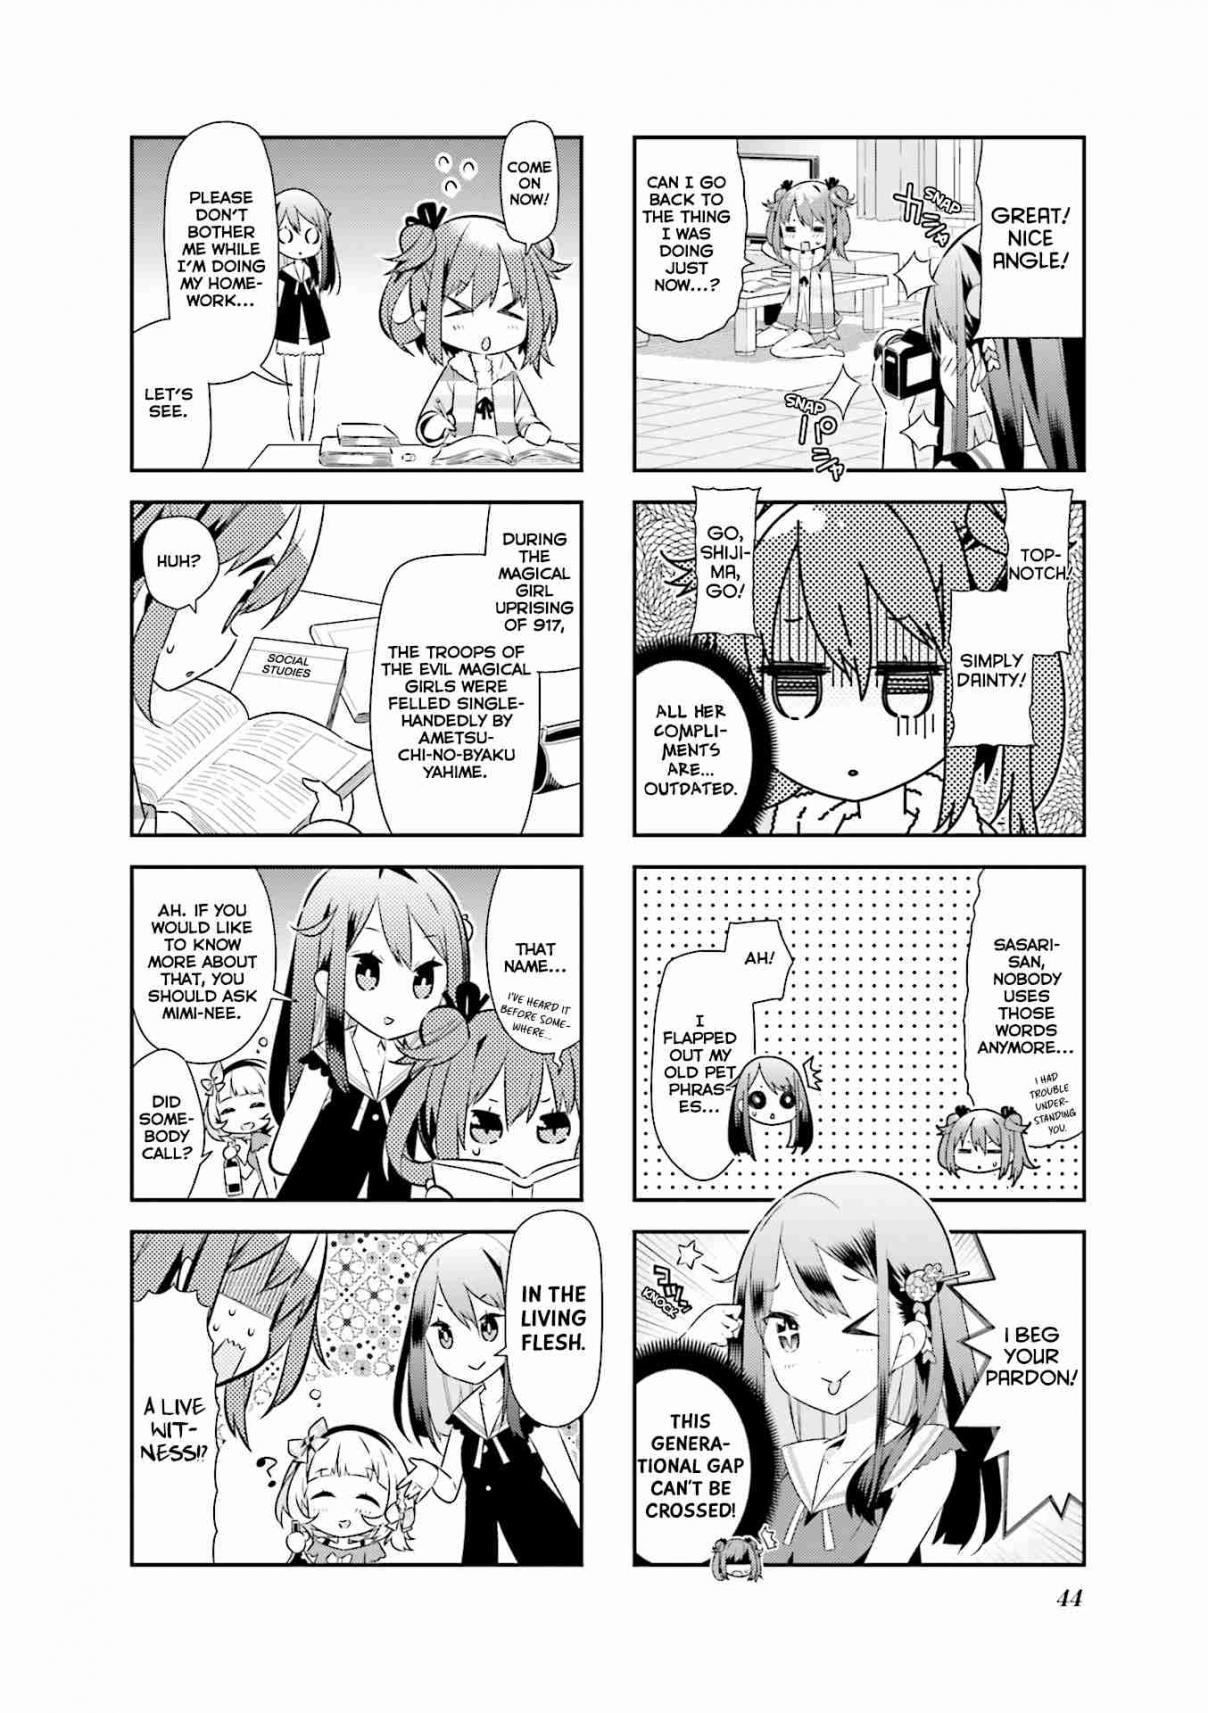 Mahou Shoujo no Kareinaru Yosei Vol. 1 Ch. 5 Exposed! Sasari's Secret